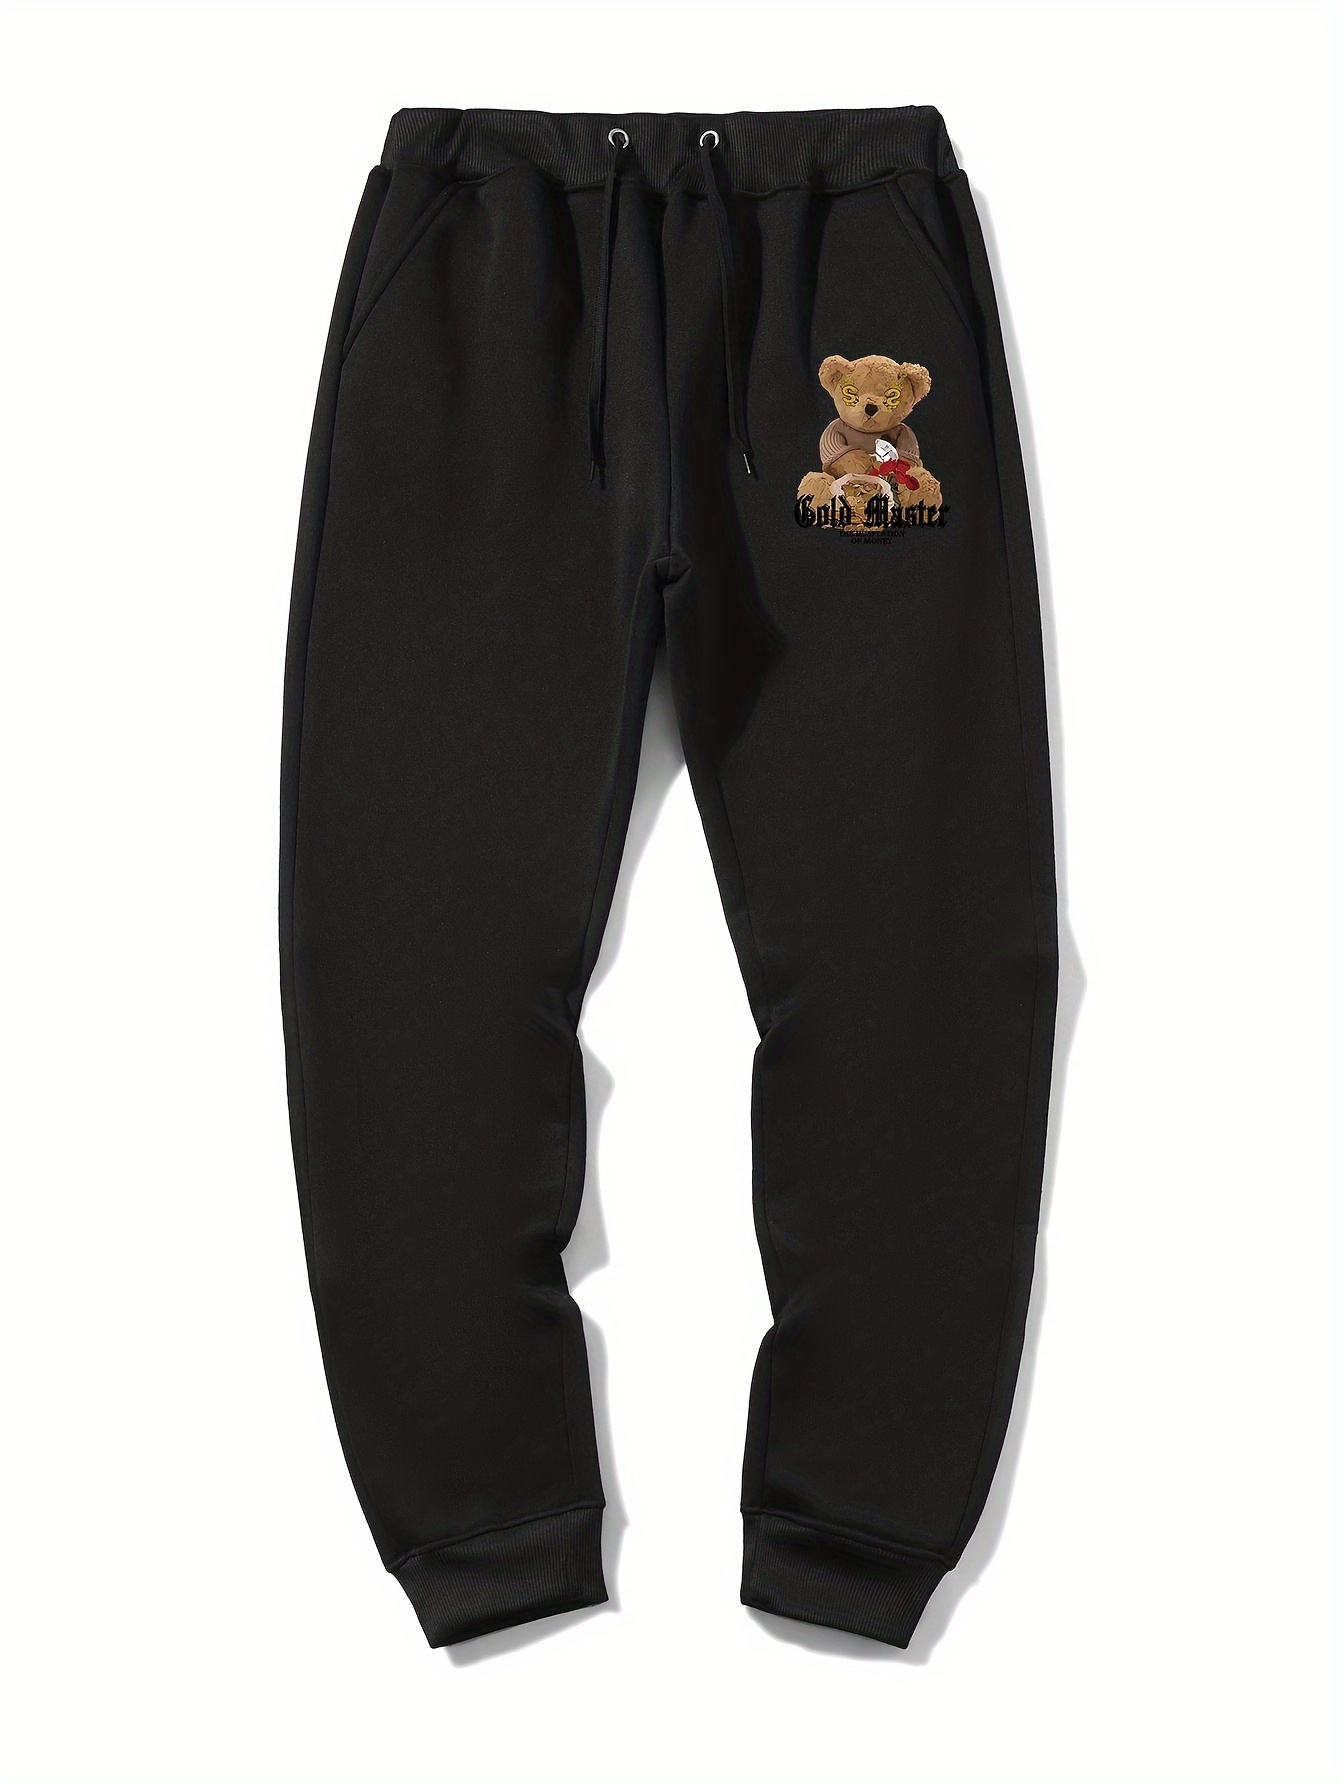 Polo Ralph Lauren Polo Bear Print Jogger Pajama Pants